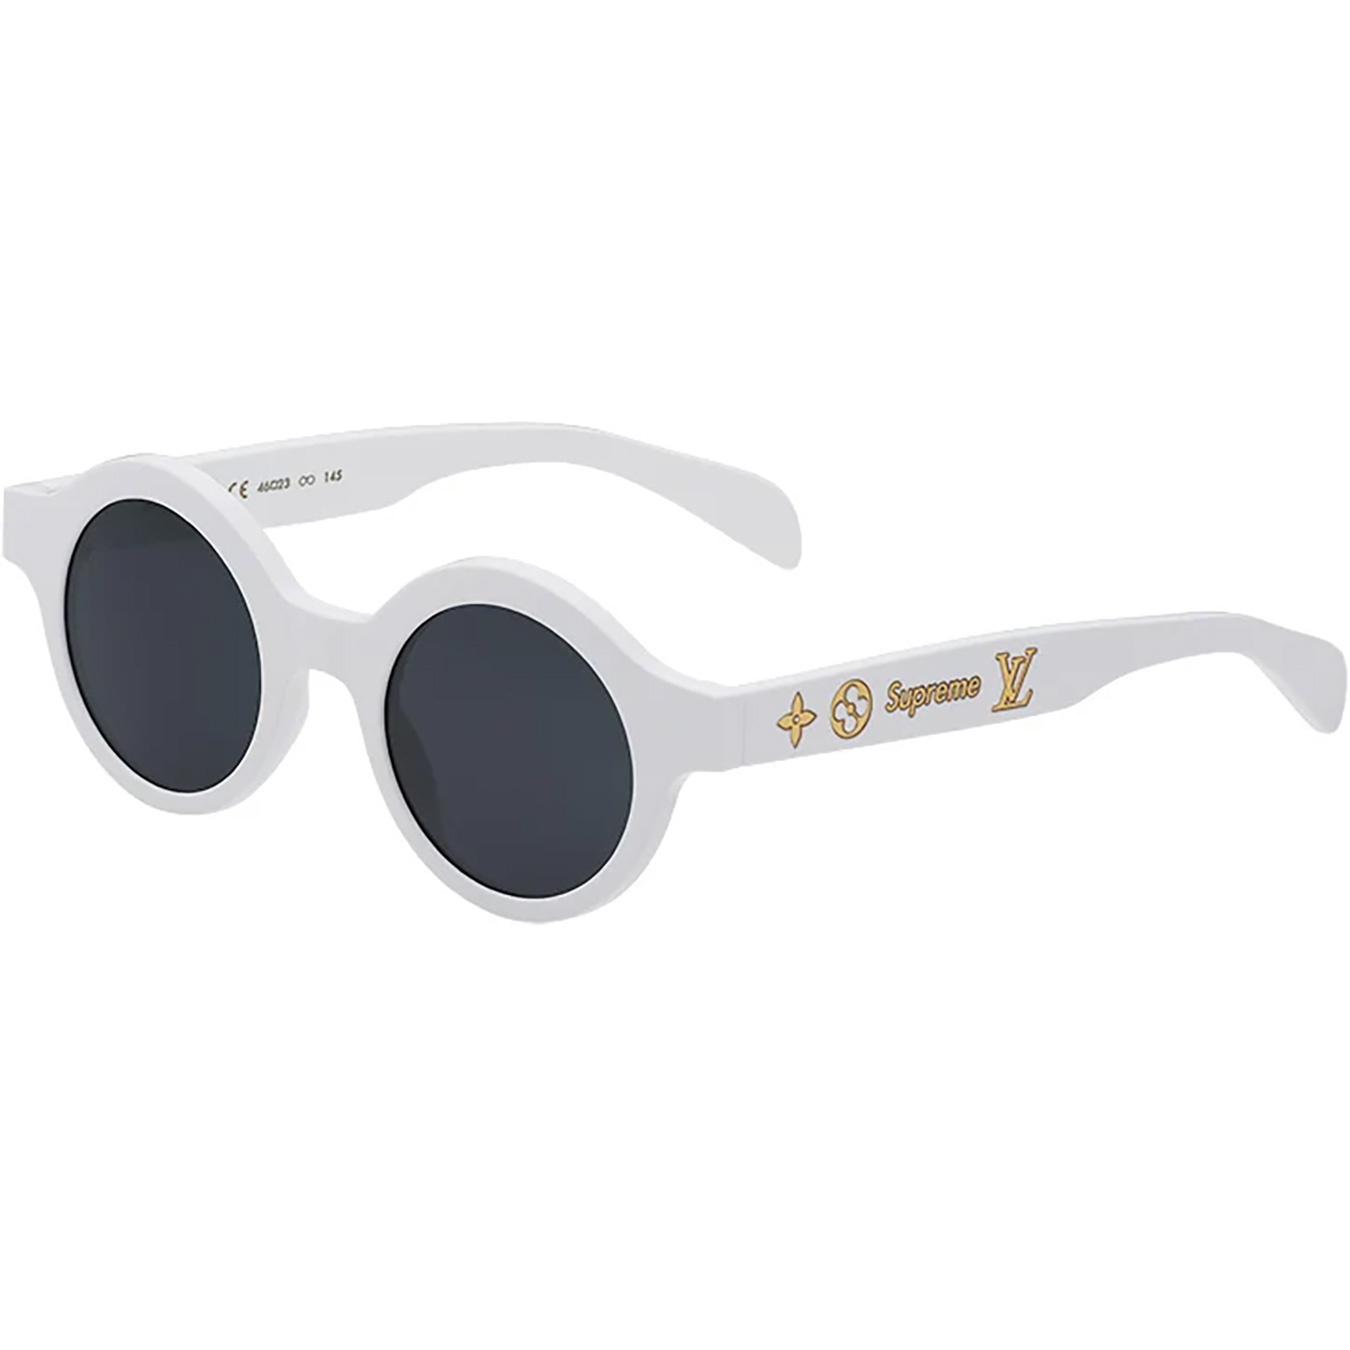 Louis Vuitton/Supreme Downtown Sunglasses